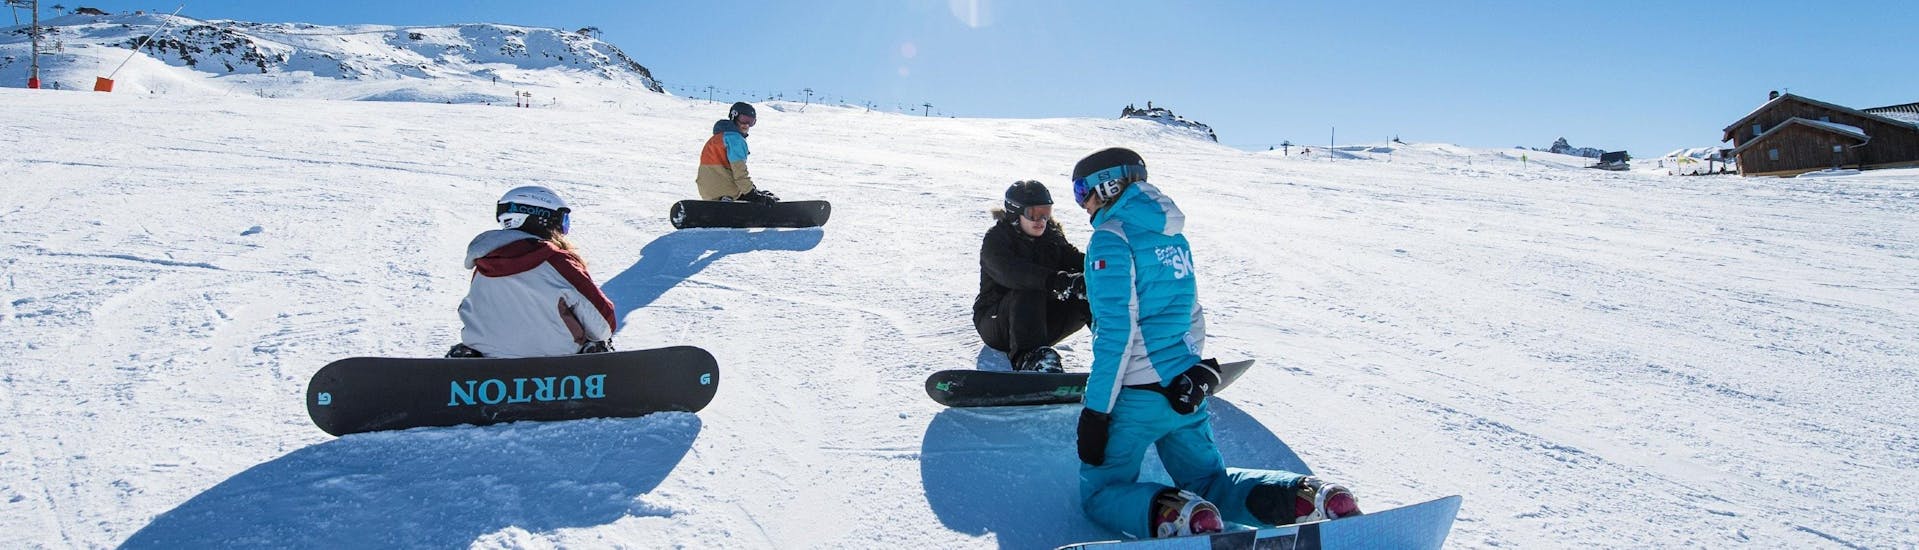 Clases de snowboard a partir de 15 años para todos los niveles.